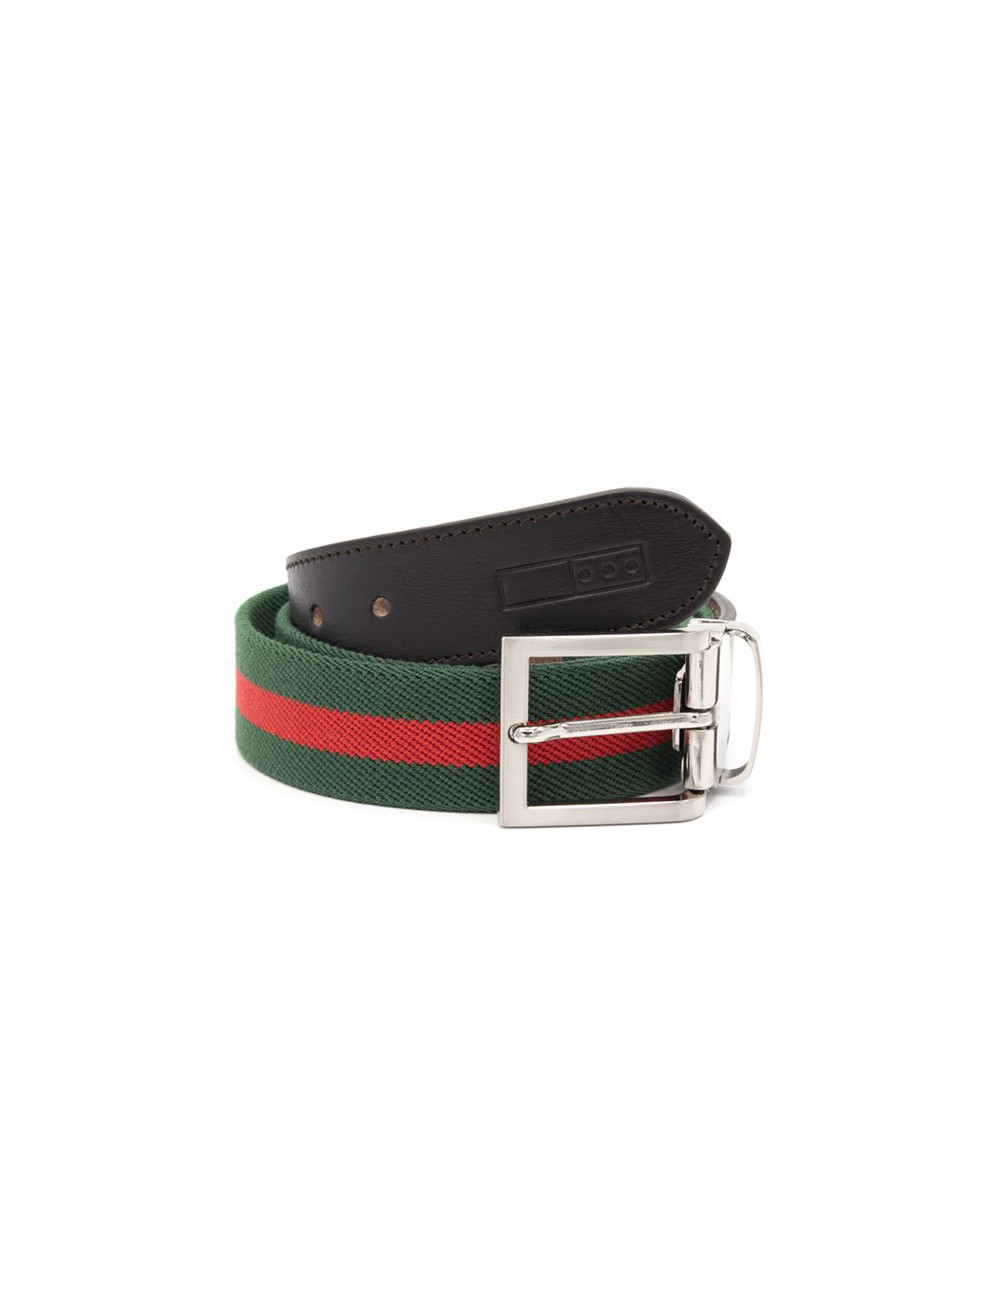 Cinturones de punto elástico para hombre, correa de trabajo casual con  hebilla de alfiler de calidad (tamaño 50 pulgadas/49.2 in, color: verde